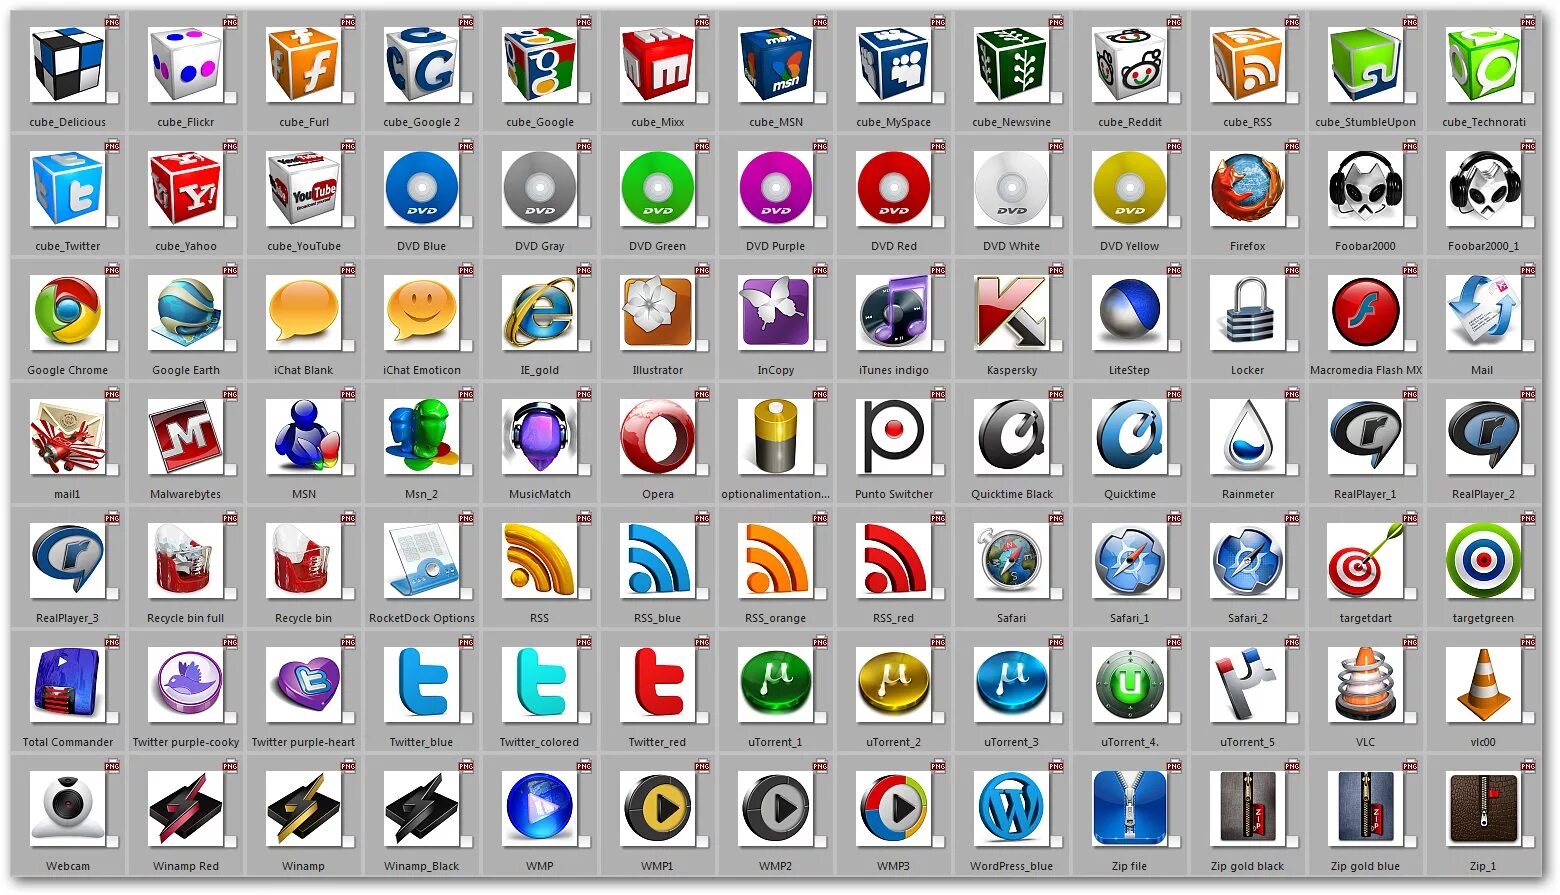 Значки программ для компьютера. Иконки программ с названиями. Красивые иконки для приложений. Компьютерные программы с иконками и названием. Файл со значками